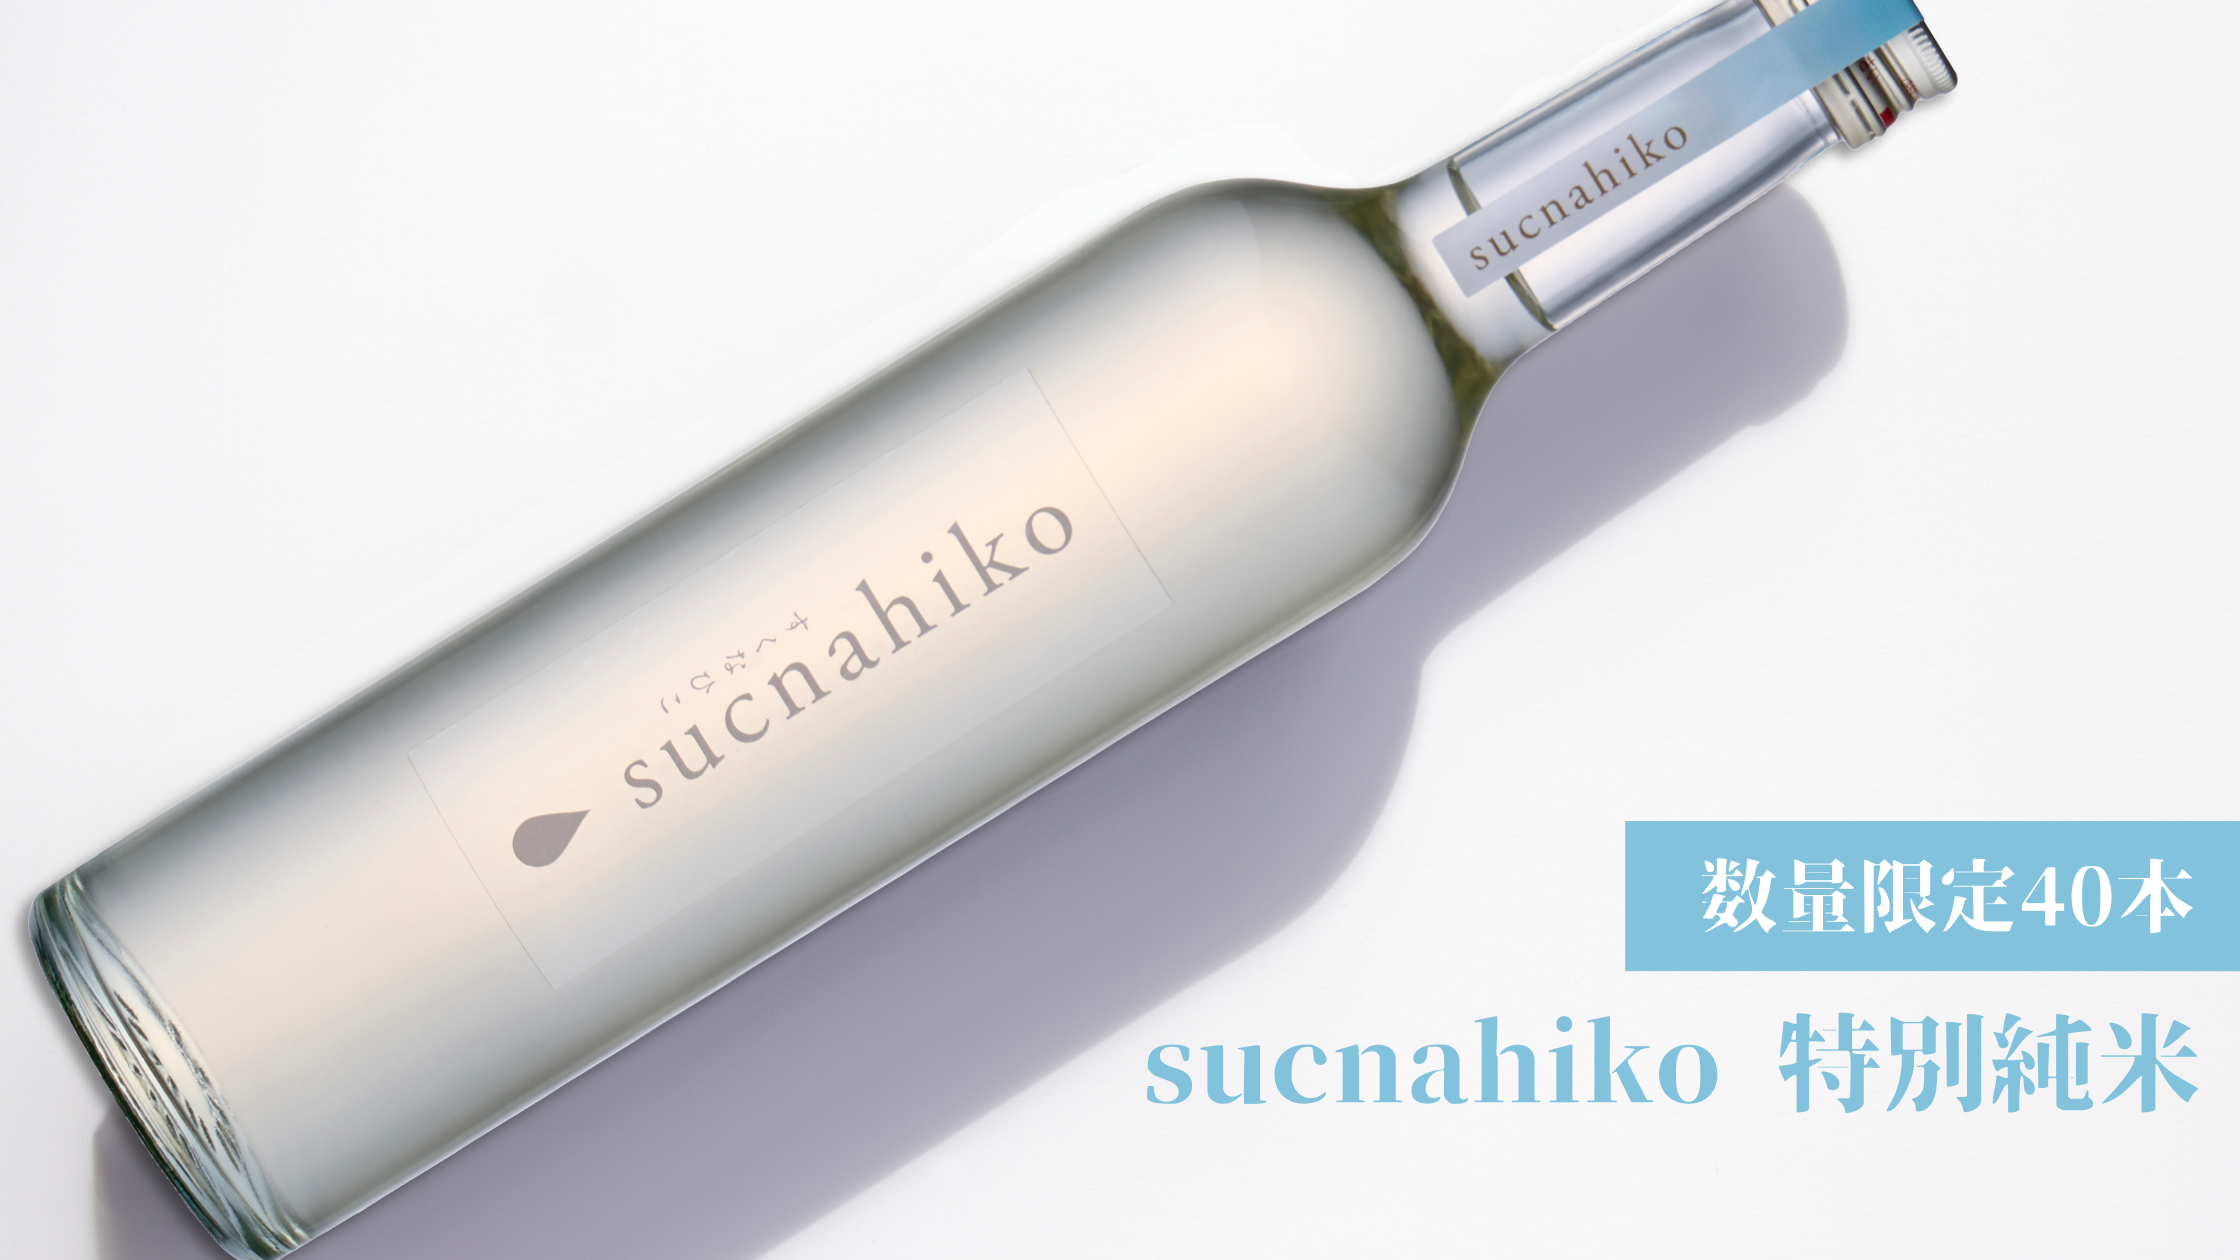 オリジナル日本酒「sucnahiko特別純米」販売開始